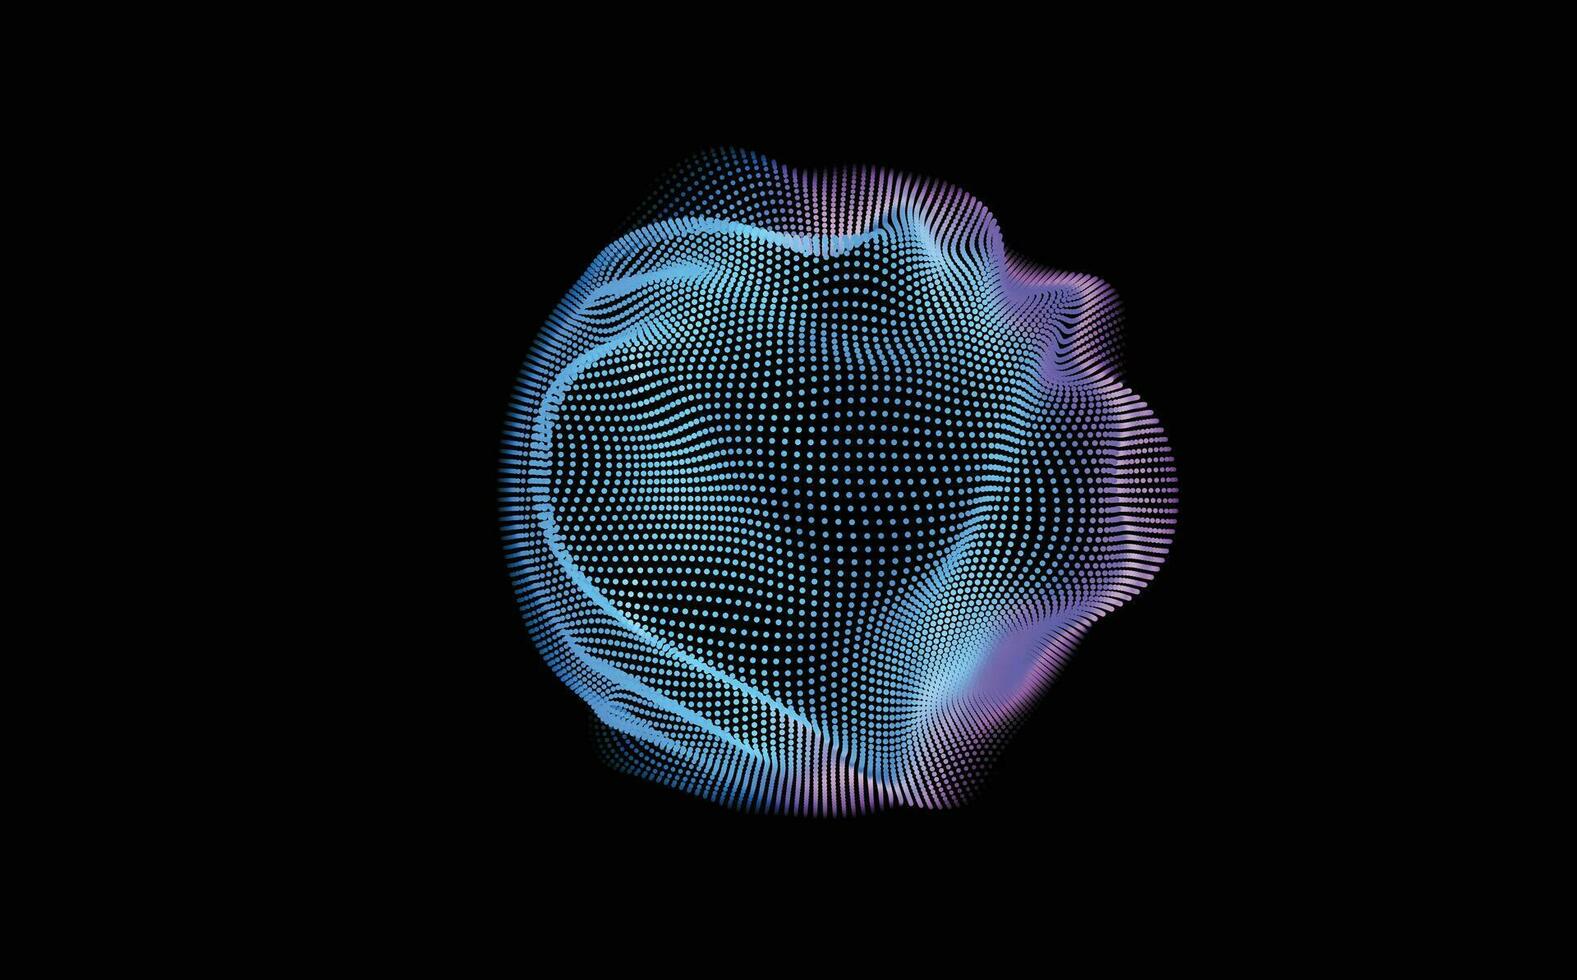 abstrakt Digital Kreise von Partikel mit Lärm. futuristisch kreisförmig Klang Welle. groß Daten Visualisierung. 3d virtuell Raum vr Cyberspace. Krypto Währung Konzept. vektor